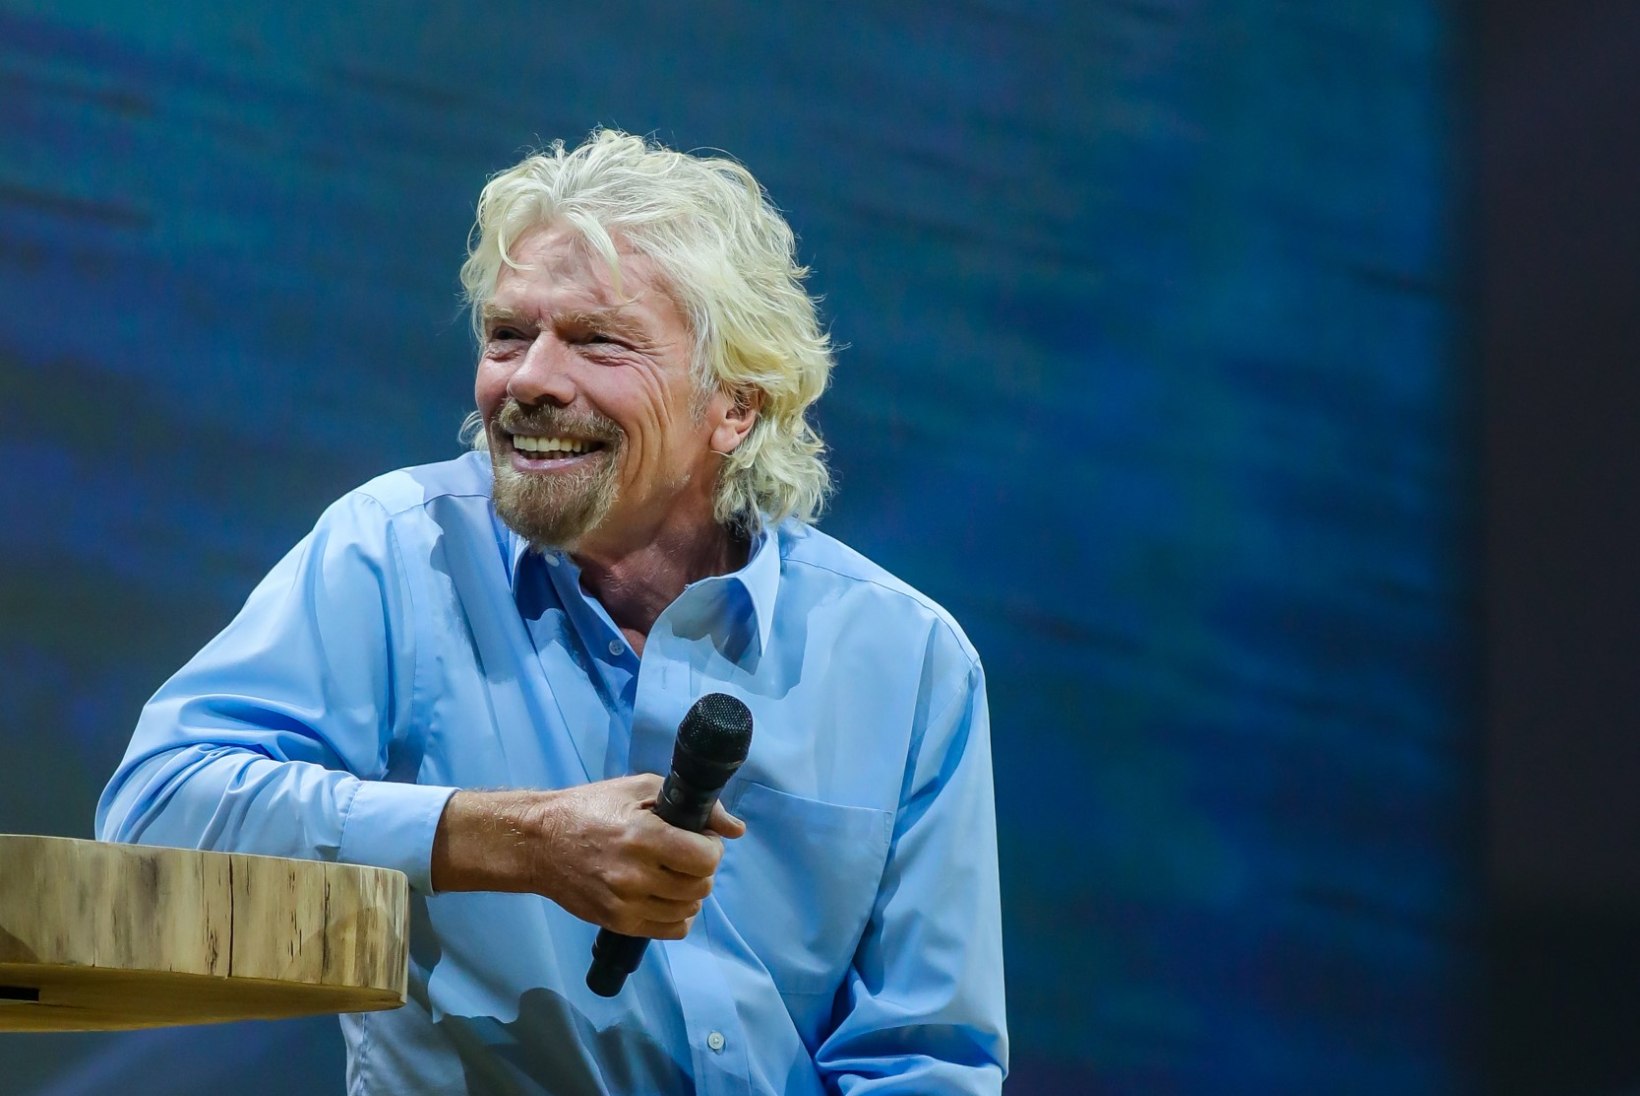 PILDID | Sir Richard Branson: Põhjamaades elavad inimesed peaks olema õnnelikud